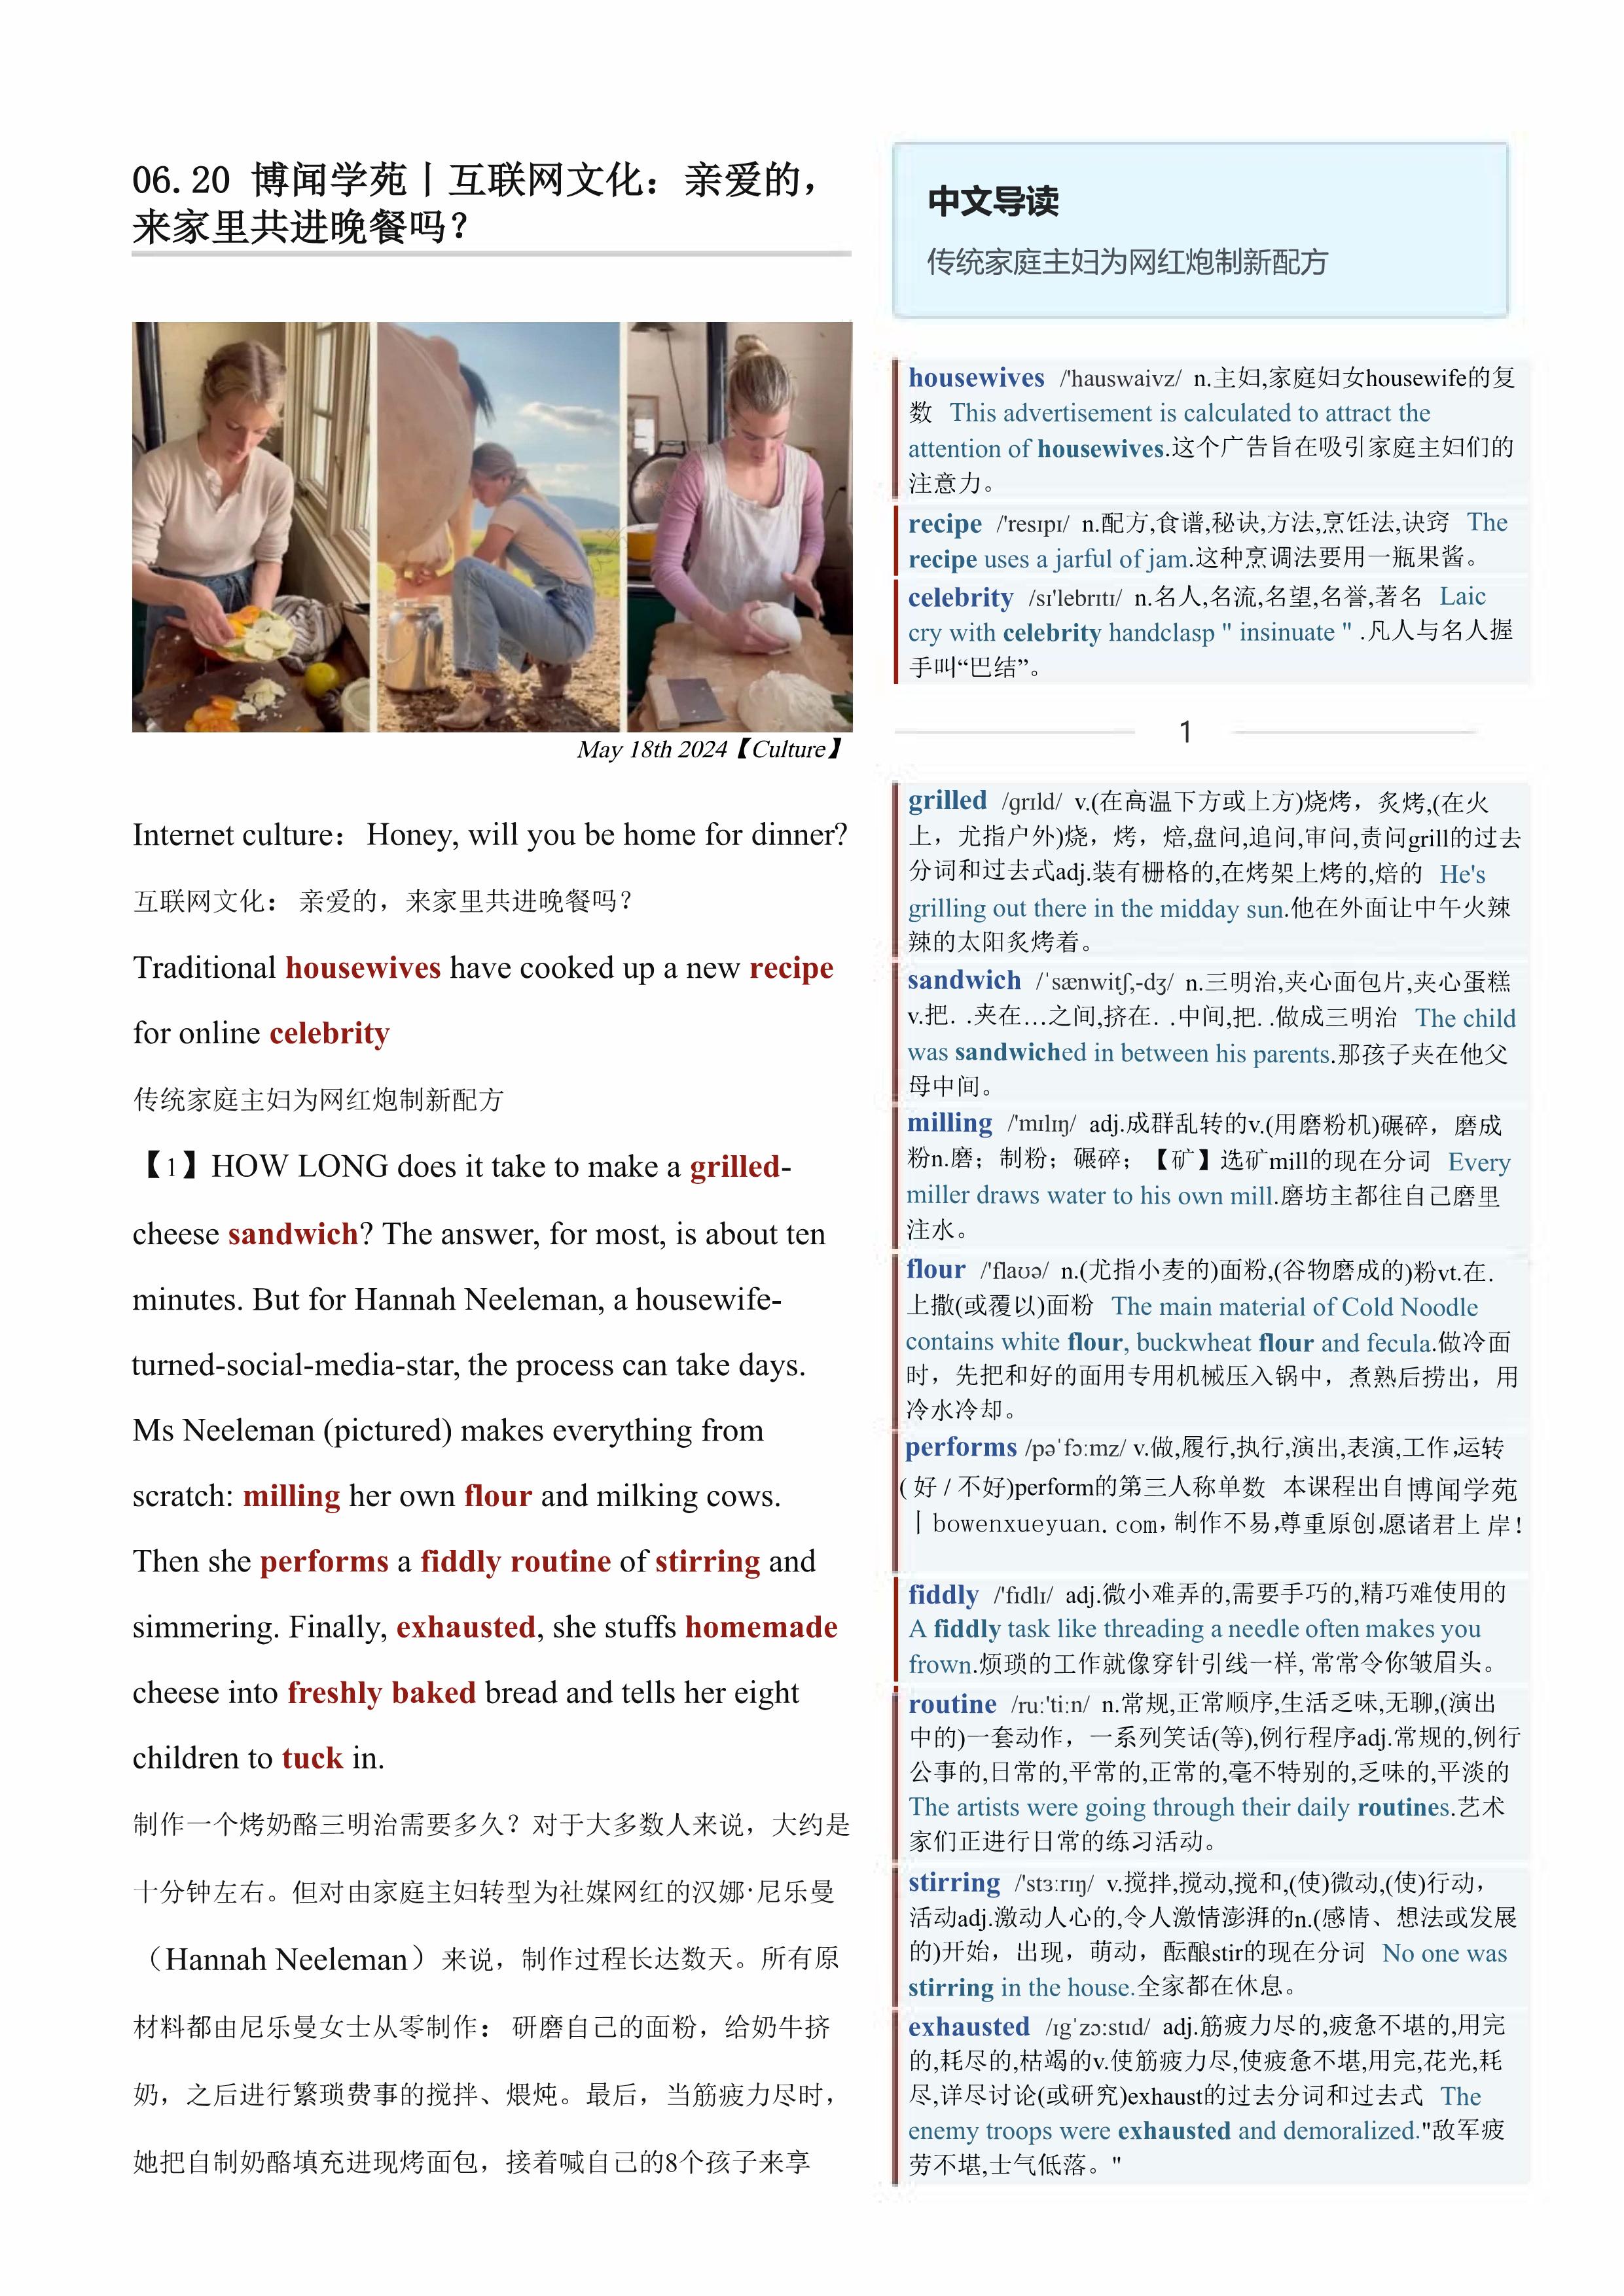 2024.06.20 经济学人双语精读丨互联网文化：亲爱的，来家里共进晚餐吗？ (.PDF/DOC/MP3)